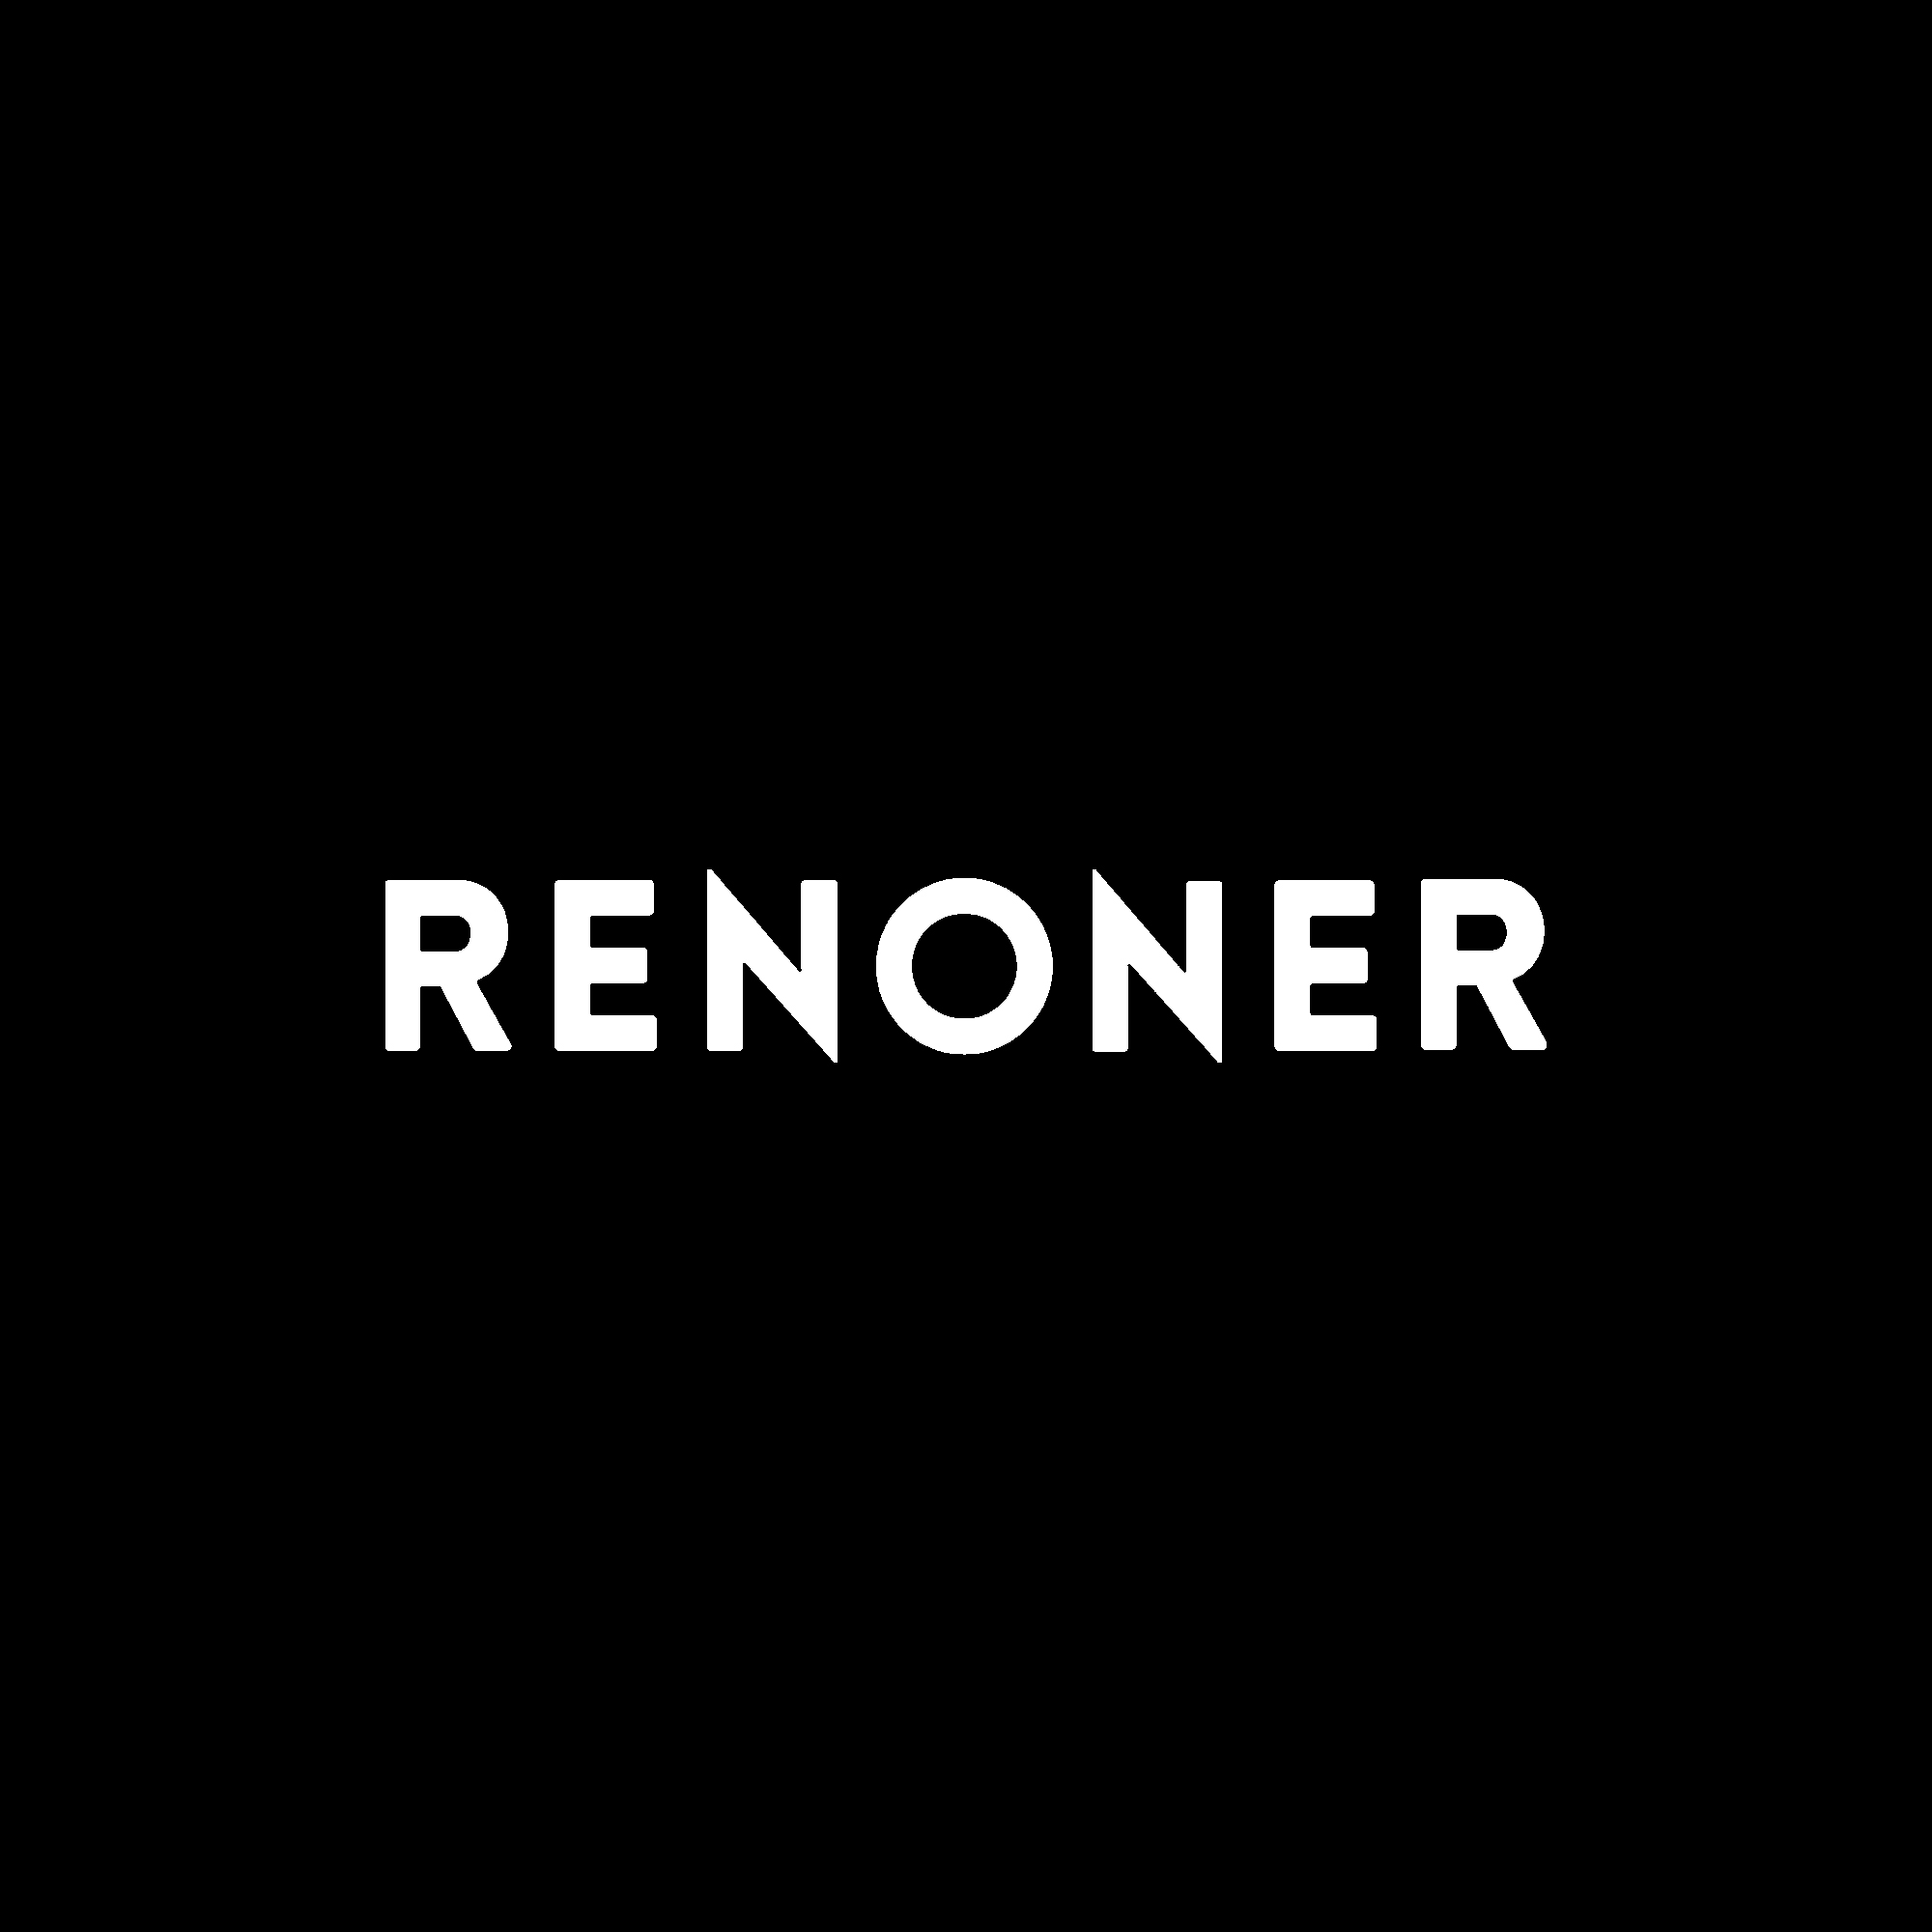 RENONER x Justine Clenquet